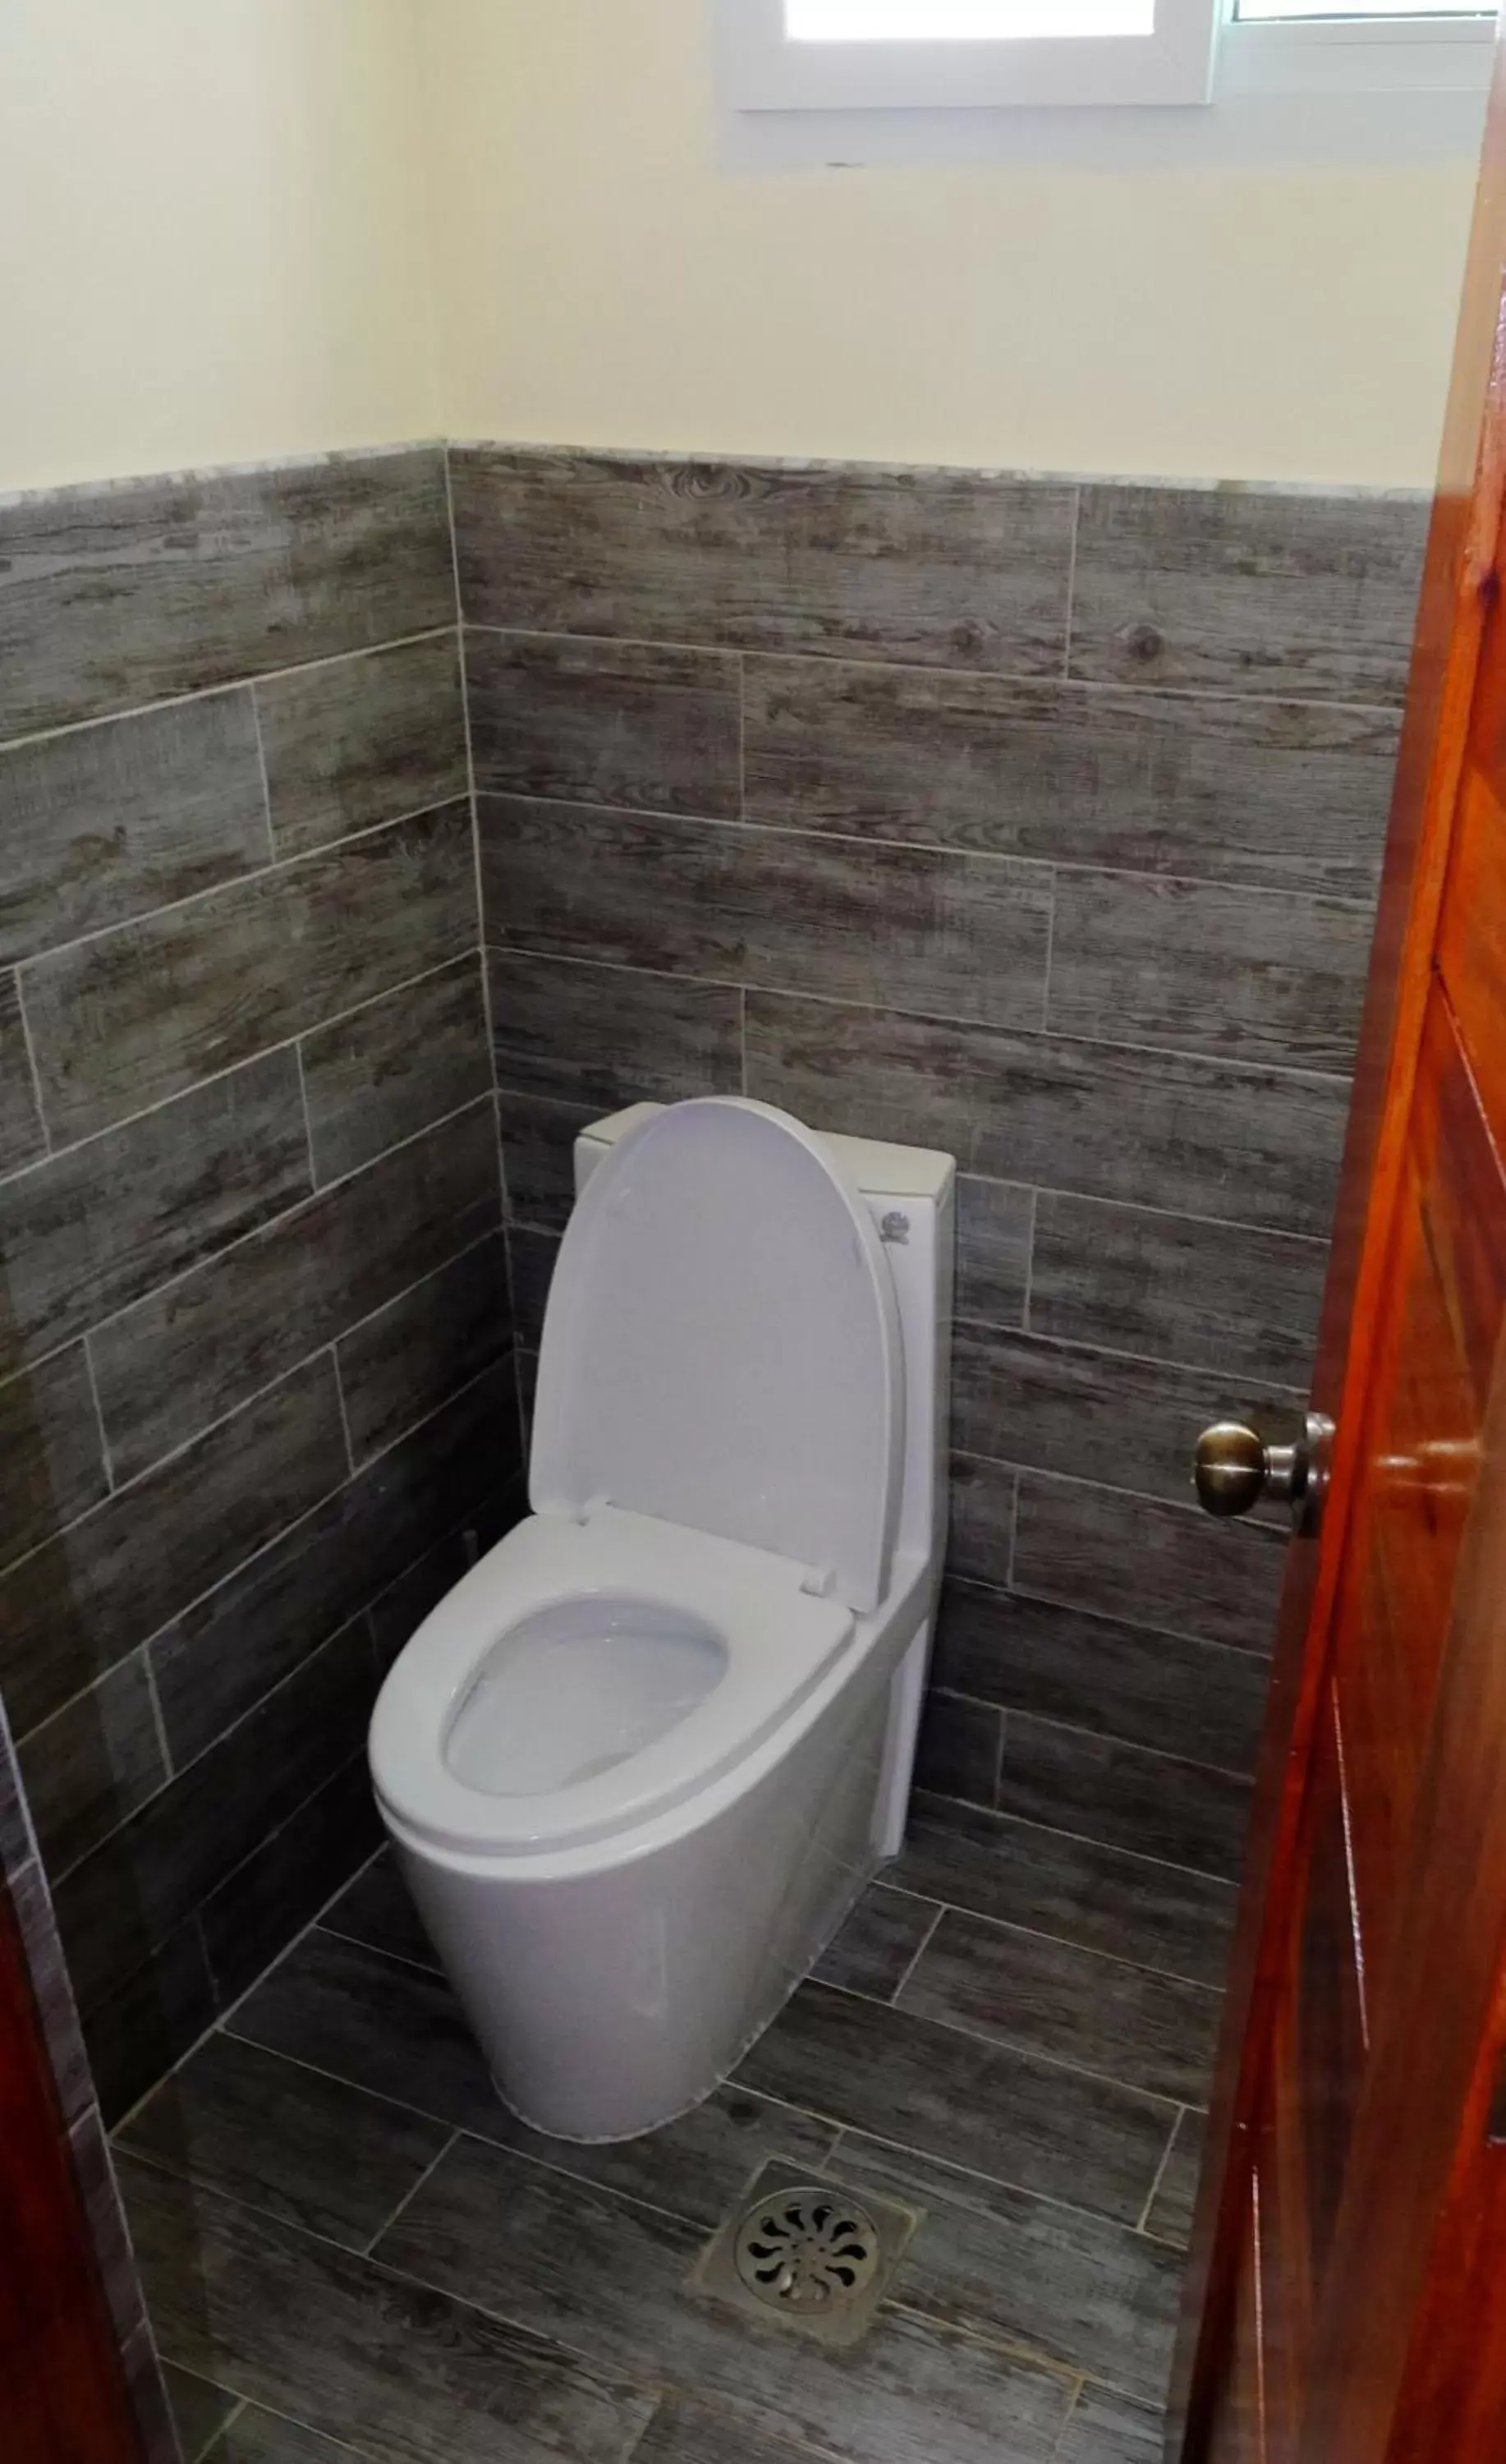 Toilet, Bathroom in Cliffside Resort